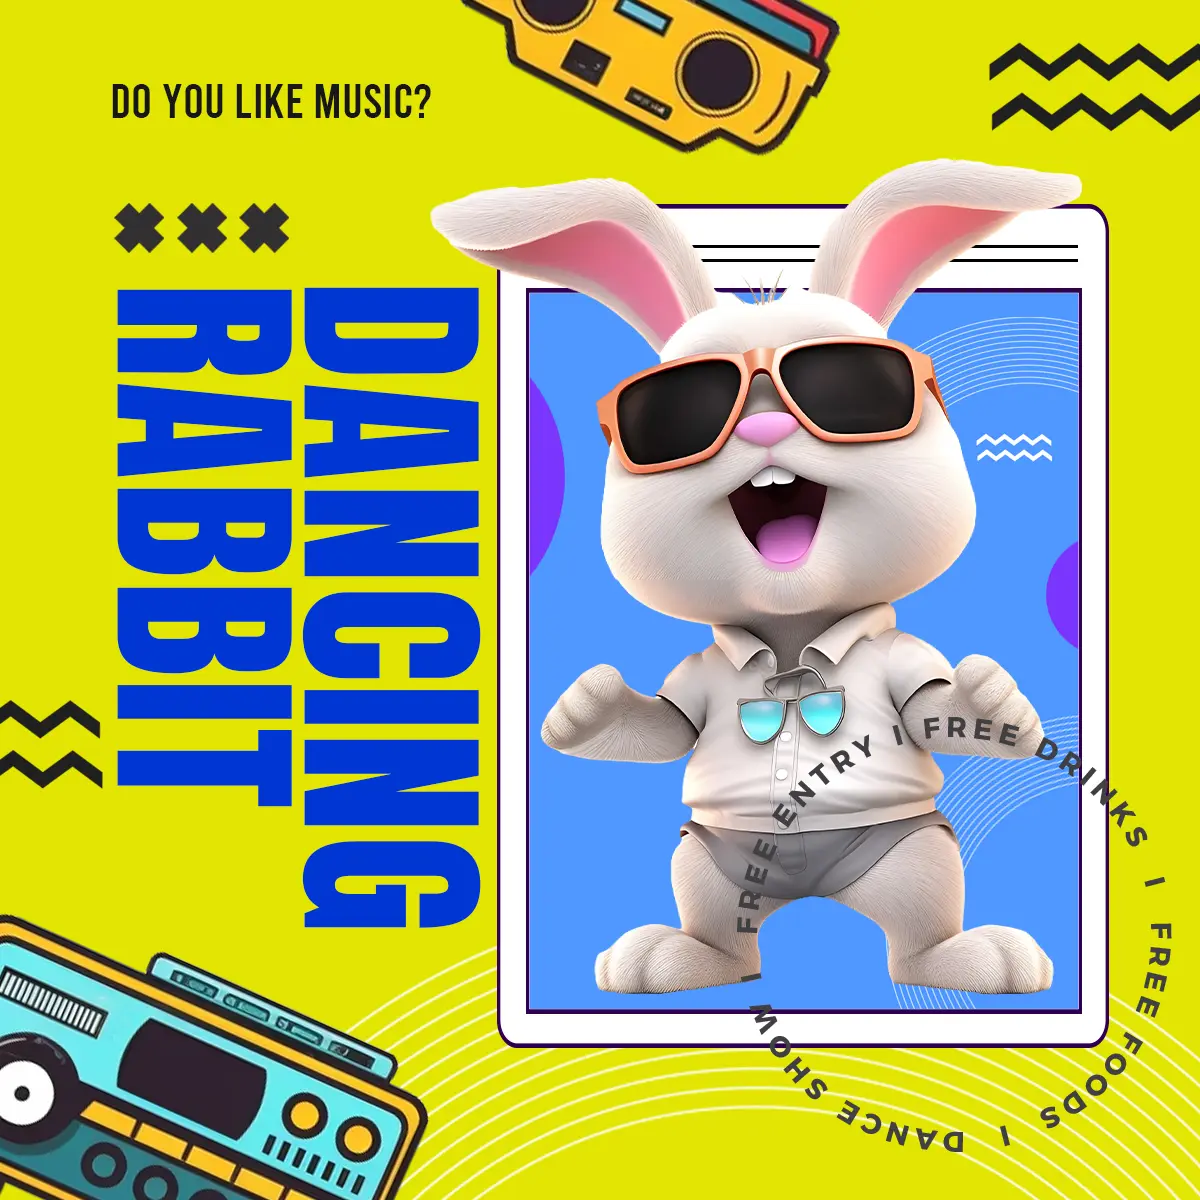 立体卡通3d兔子歌手乐器角色卡社交媒体广告图片